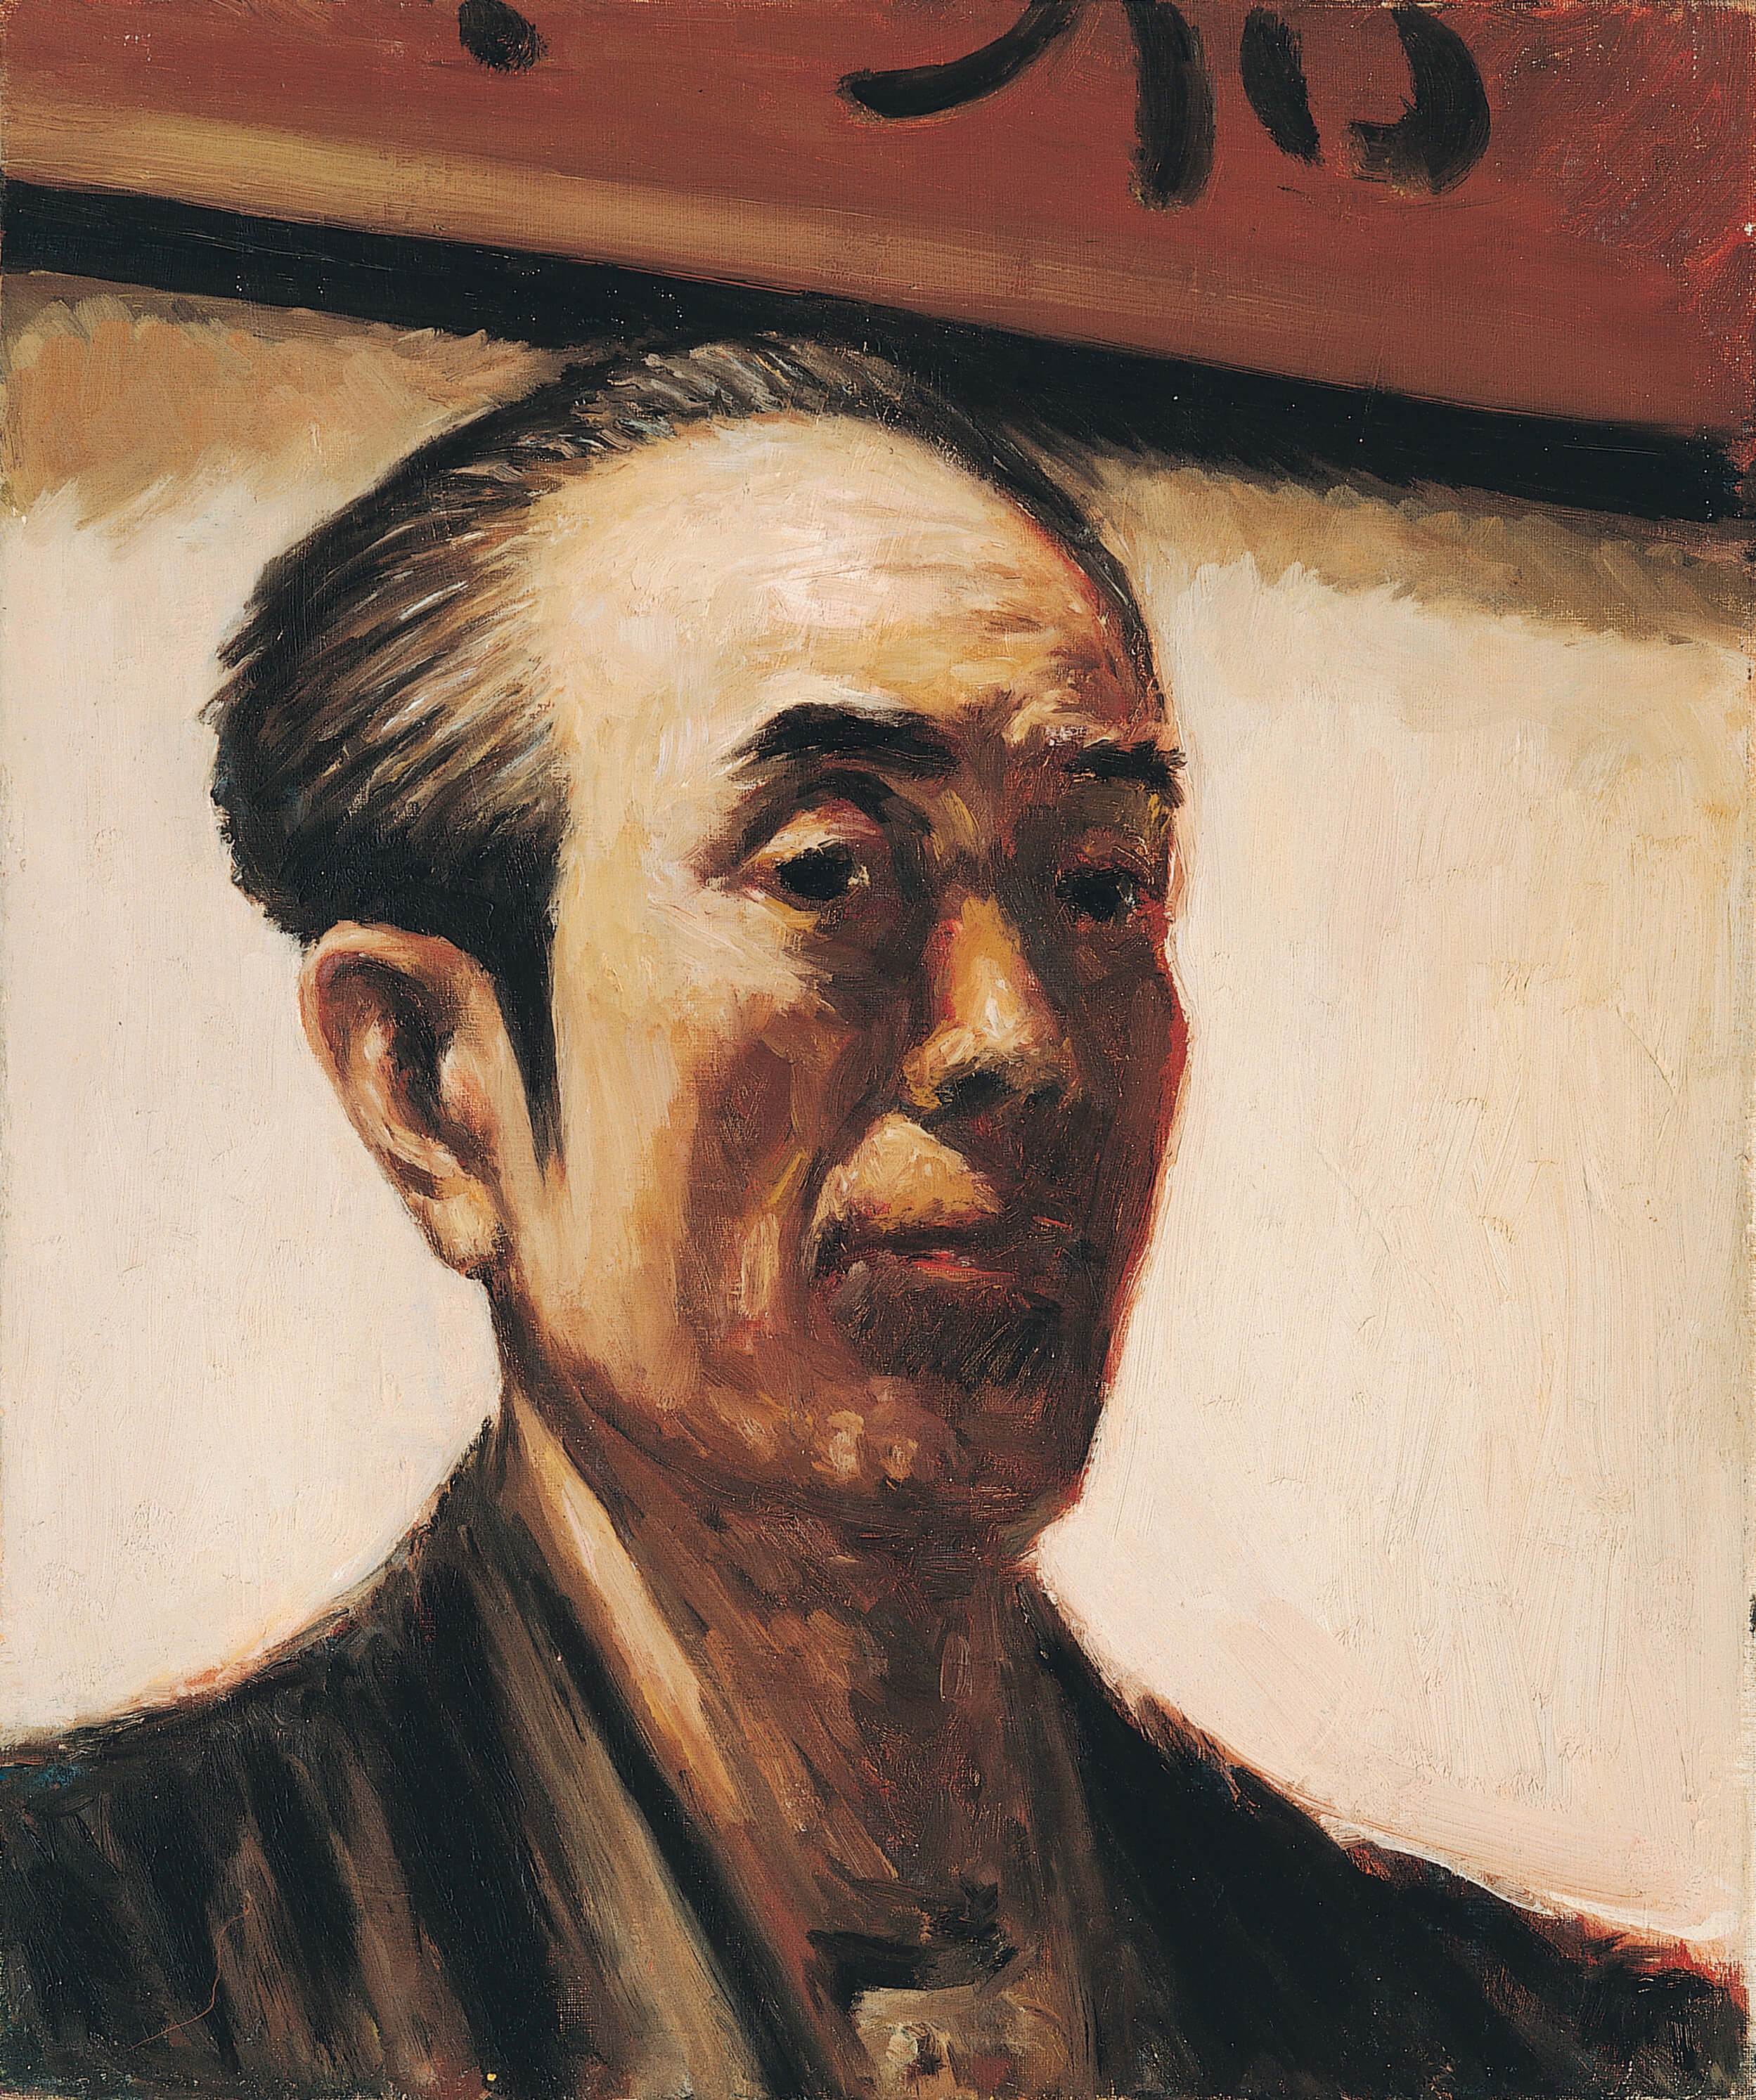 何德來，《自畫像》，1963，油彩、畫布，45.5×38公分，臺北市立美術館典藏。圖像由臺北市立美術館提供。